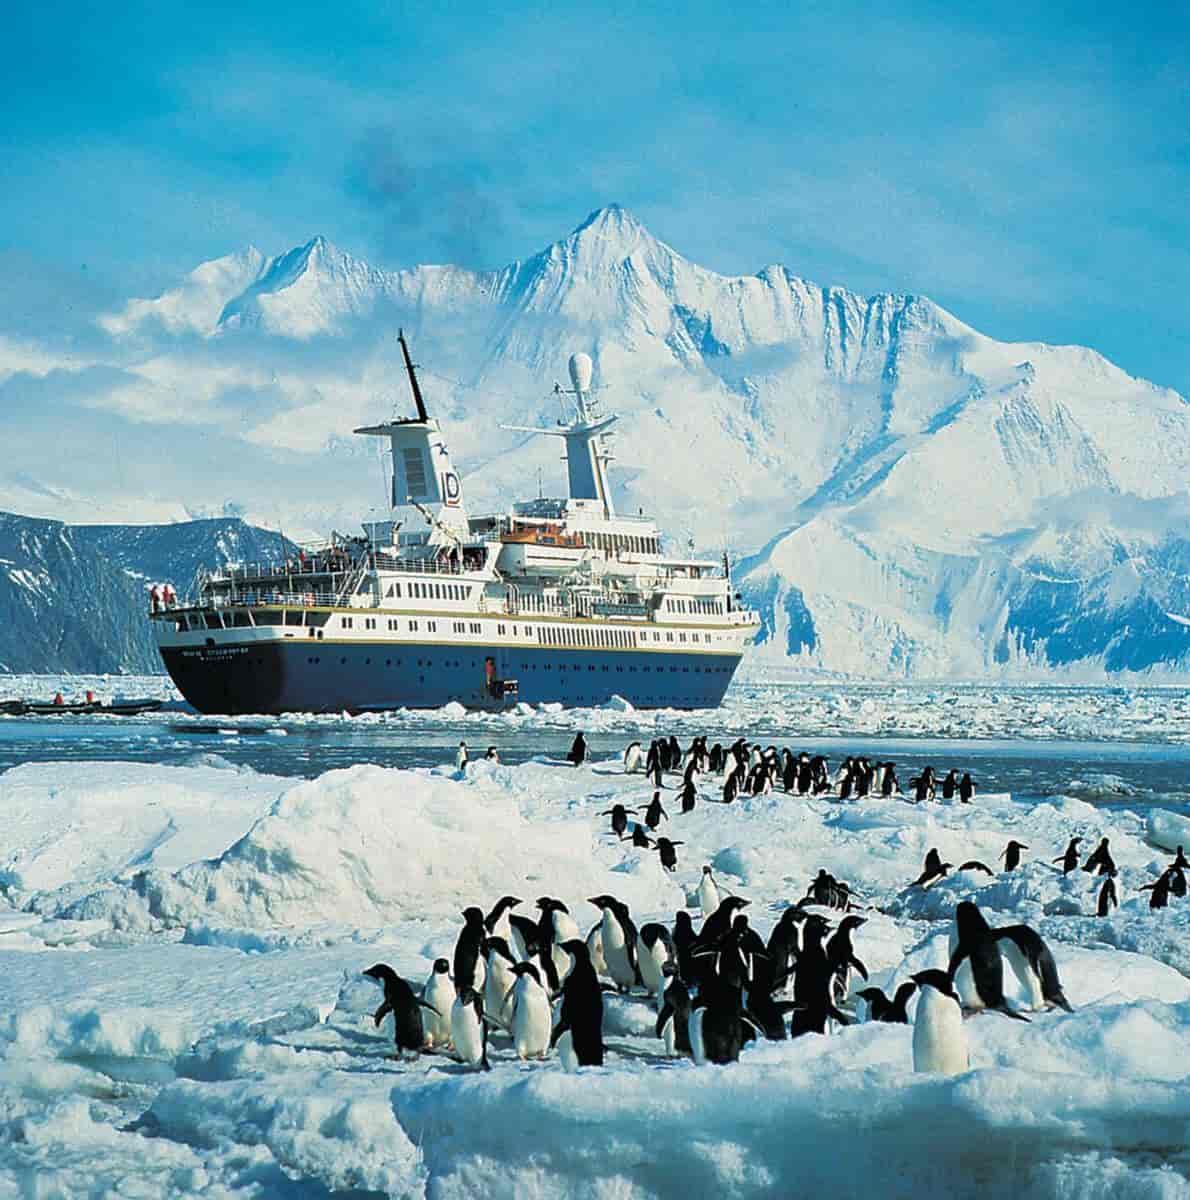 Pingviner på isen med et cruiseskip bakenfor. Høye, snødekte fjell og himmel i bakgrunnen.